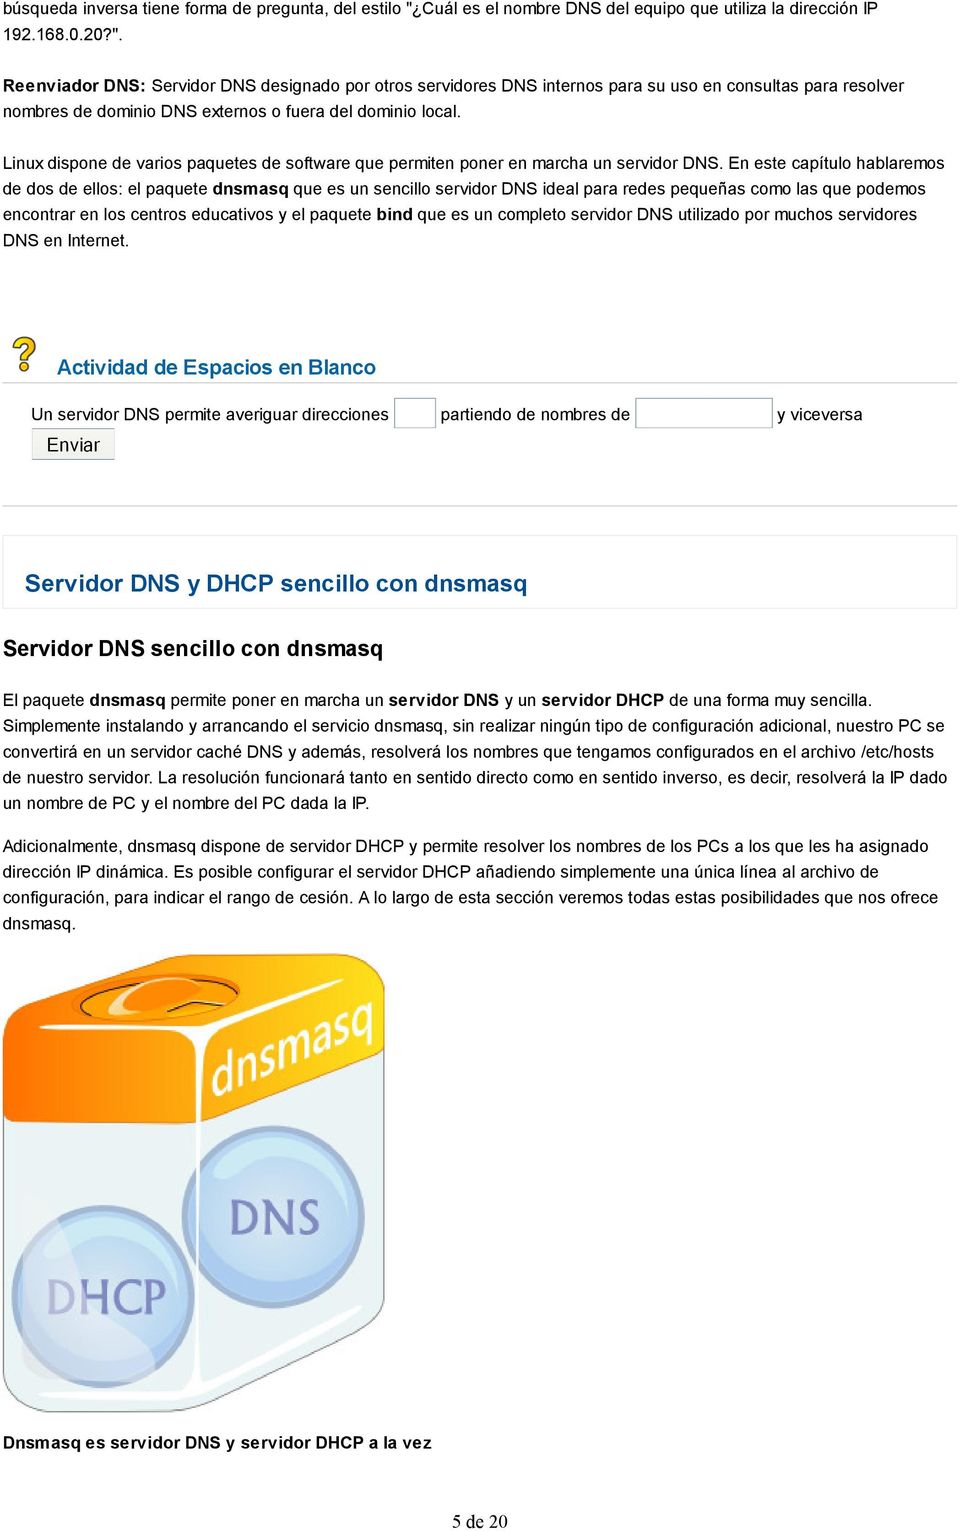 Reenviador DNS: Servidor DNS designado por otros servidores DNS internos para su uso en consultas para resolver nombres de dominio DNS externos o fuera del dominio local.